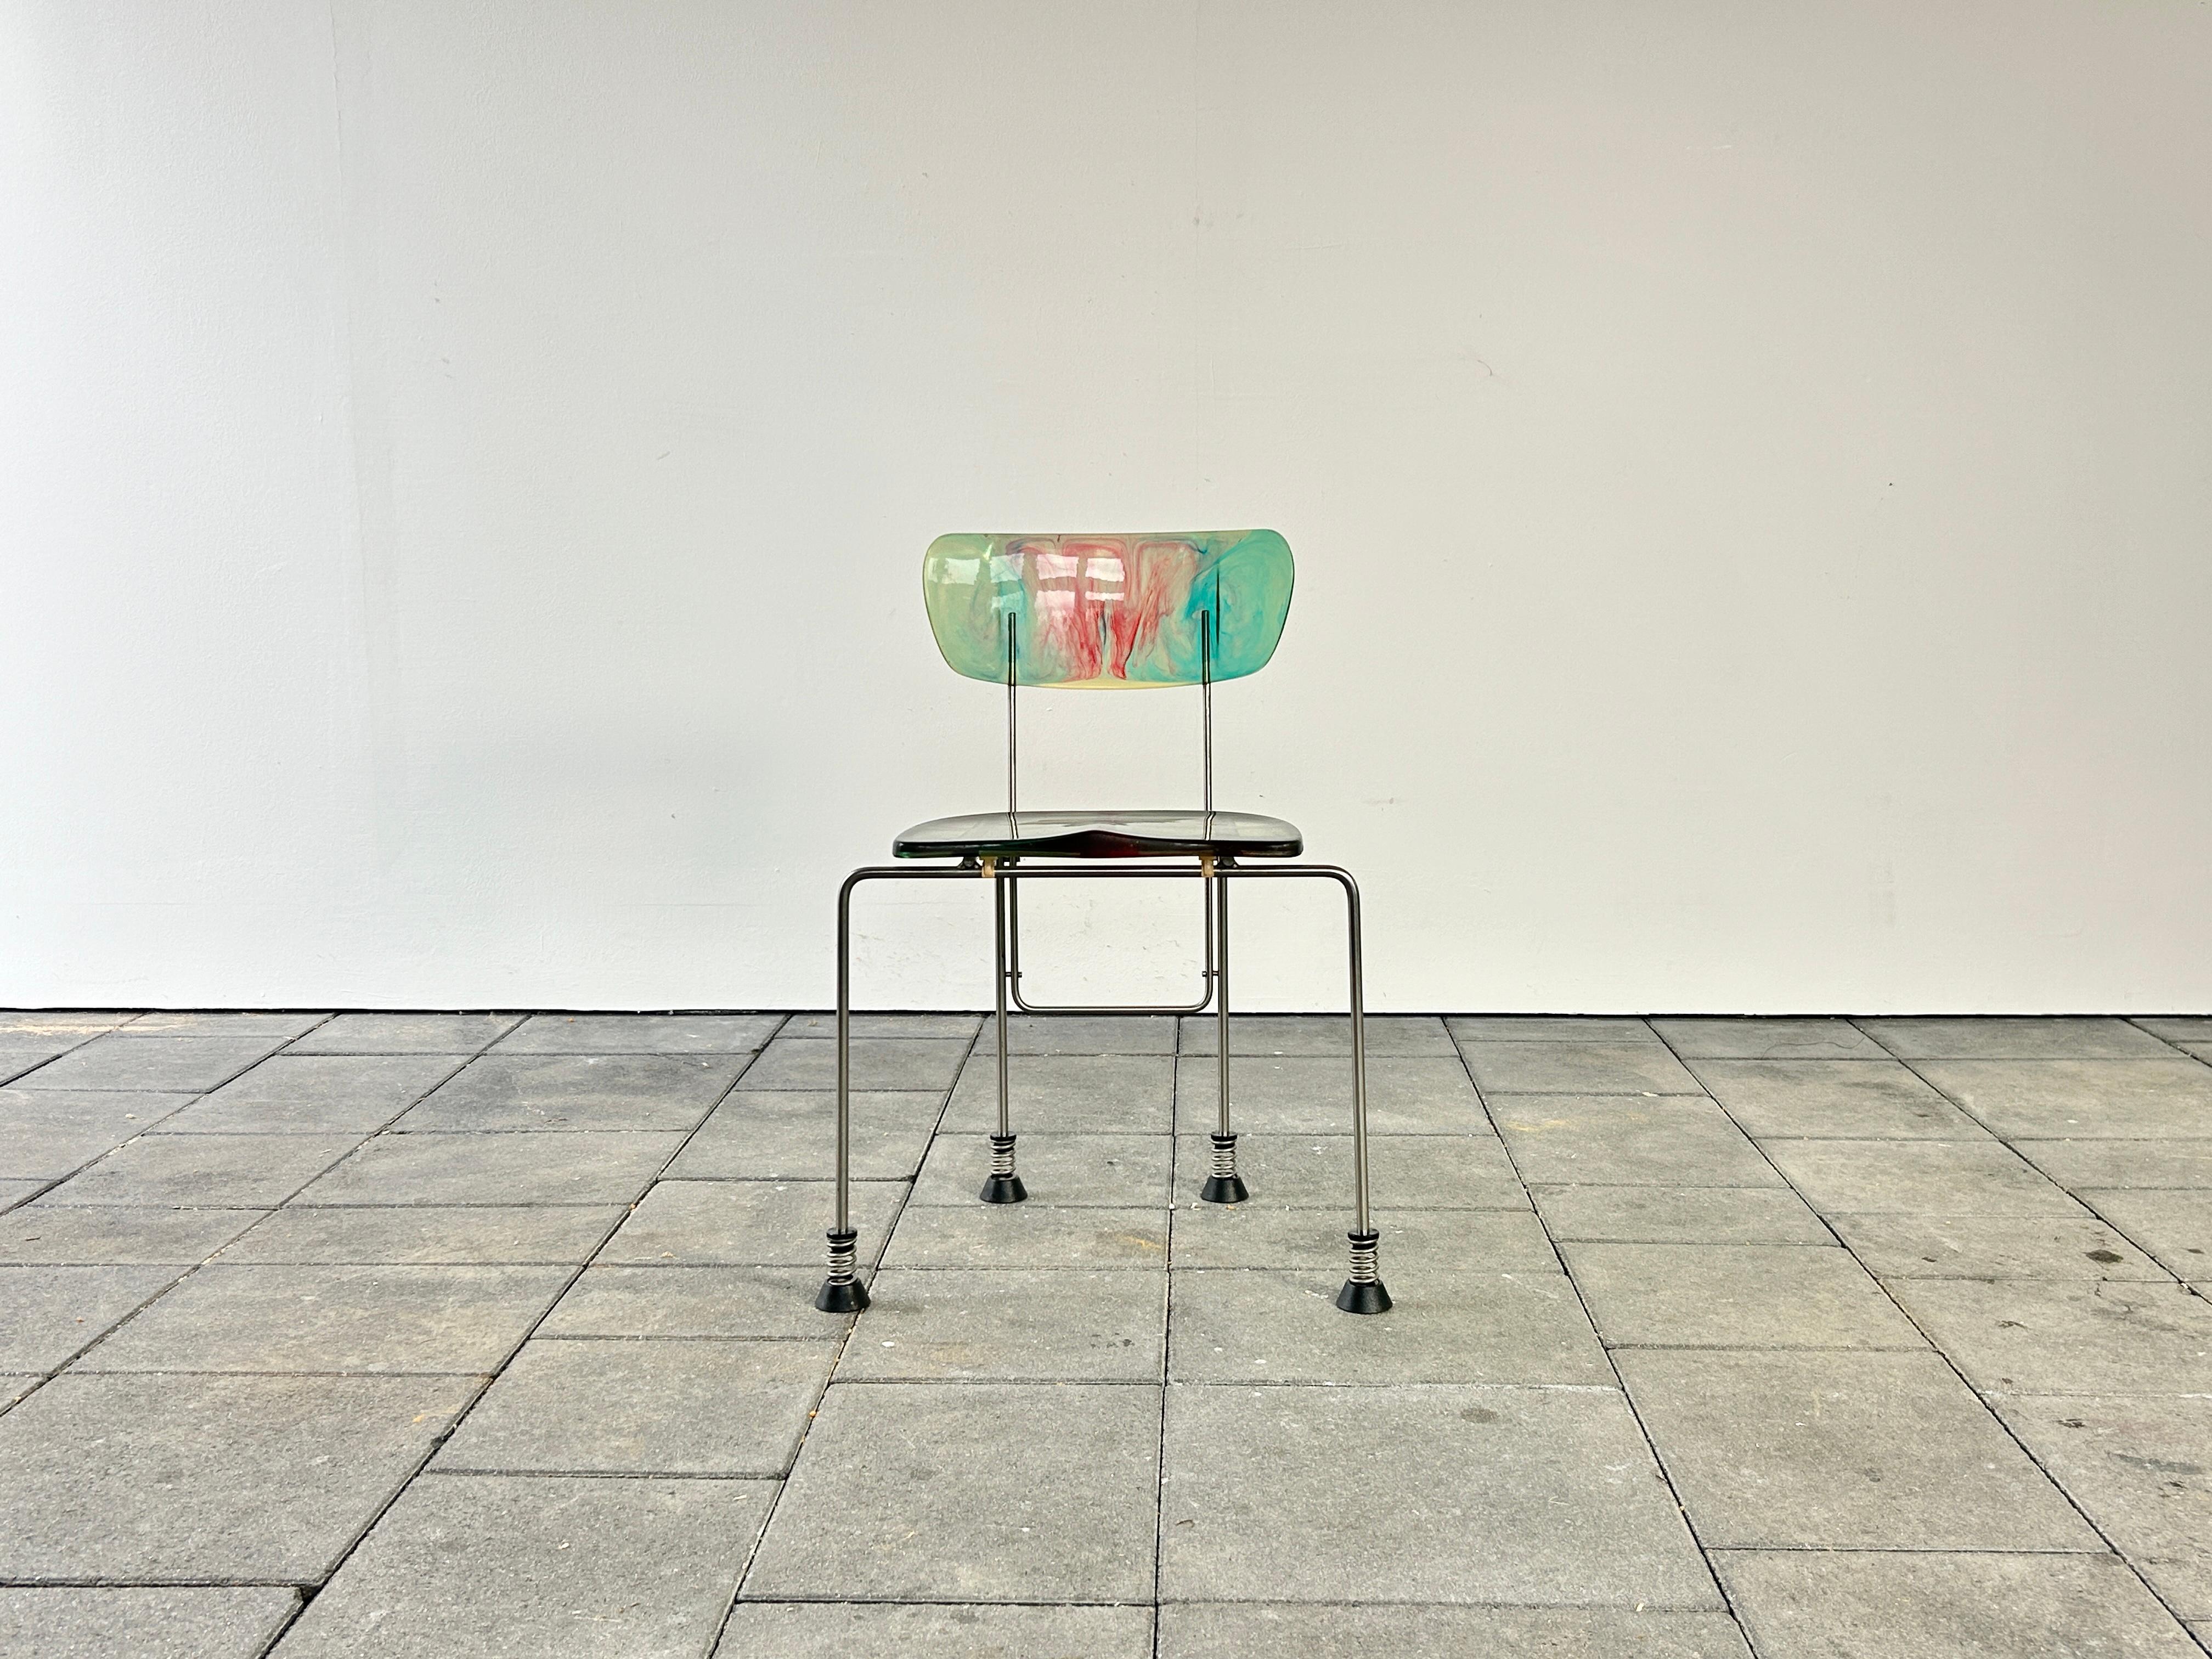 Broadway-Stuhl, 1993 von Gaetano Pesce entworfen

Hergestellt von Bernini, Italien


Gaetano Pesce war ein visionärer Designer, dessen Interesse an nicht-rationalen Formen des Möbeldesigns und an der Erkundung neuer MATERIALIEN, die er für seine